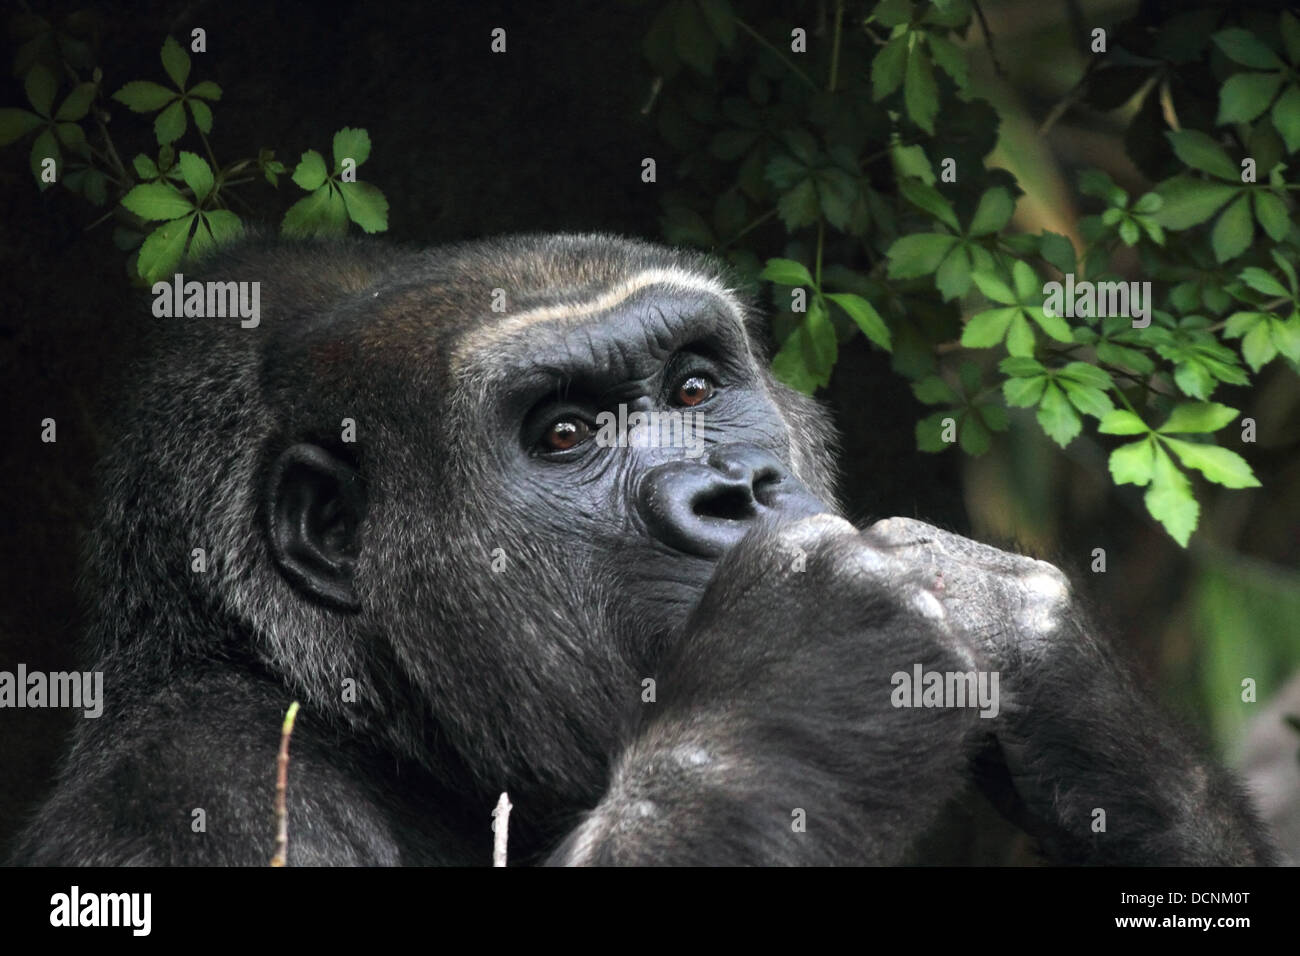 Snacking Gorilla Stock Photo